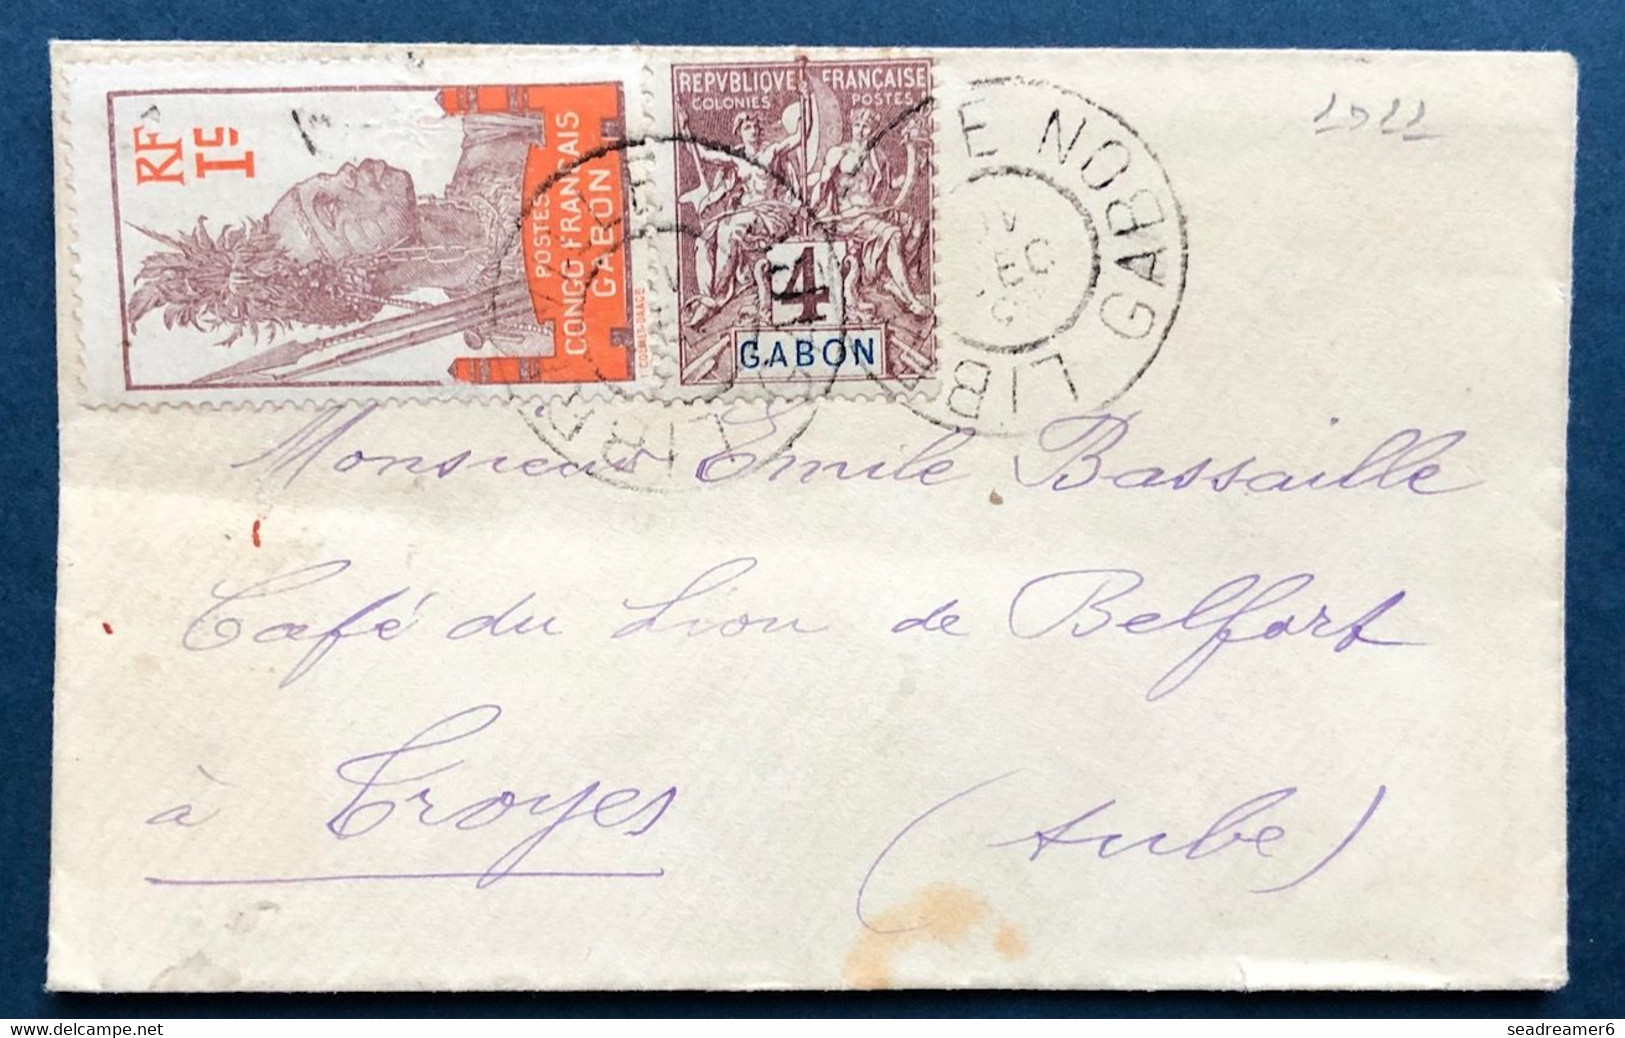 France Colonies Françaises Petite Lettre Gabon 1911 Groupe N°18 & N°33 Obl Libreville Pour Troyes Superbe - Covers & Documents